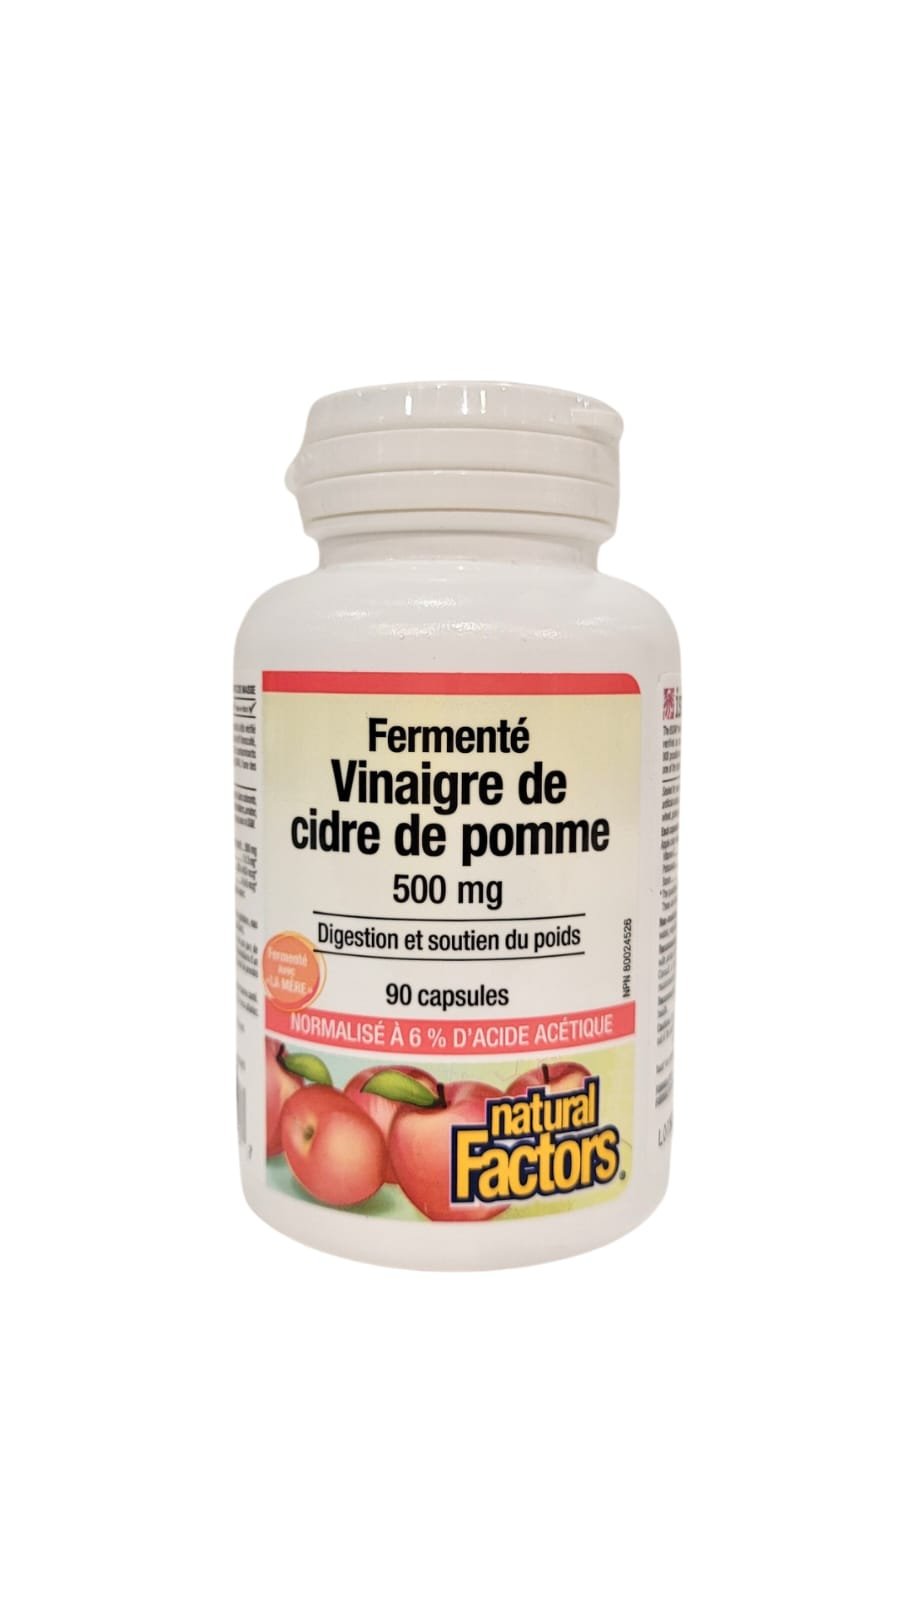 Natural Factors, Vinaigre de cidre de pomme fermenté, 500 mg, 90 gélules  végétales